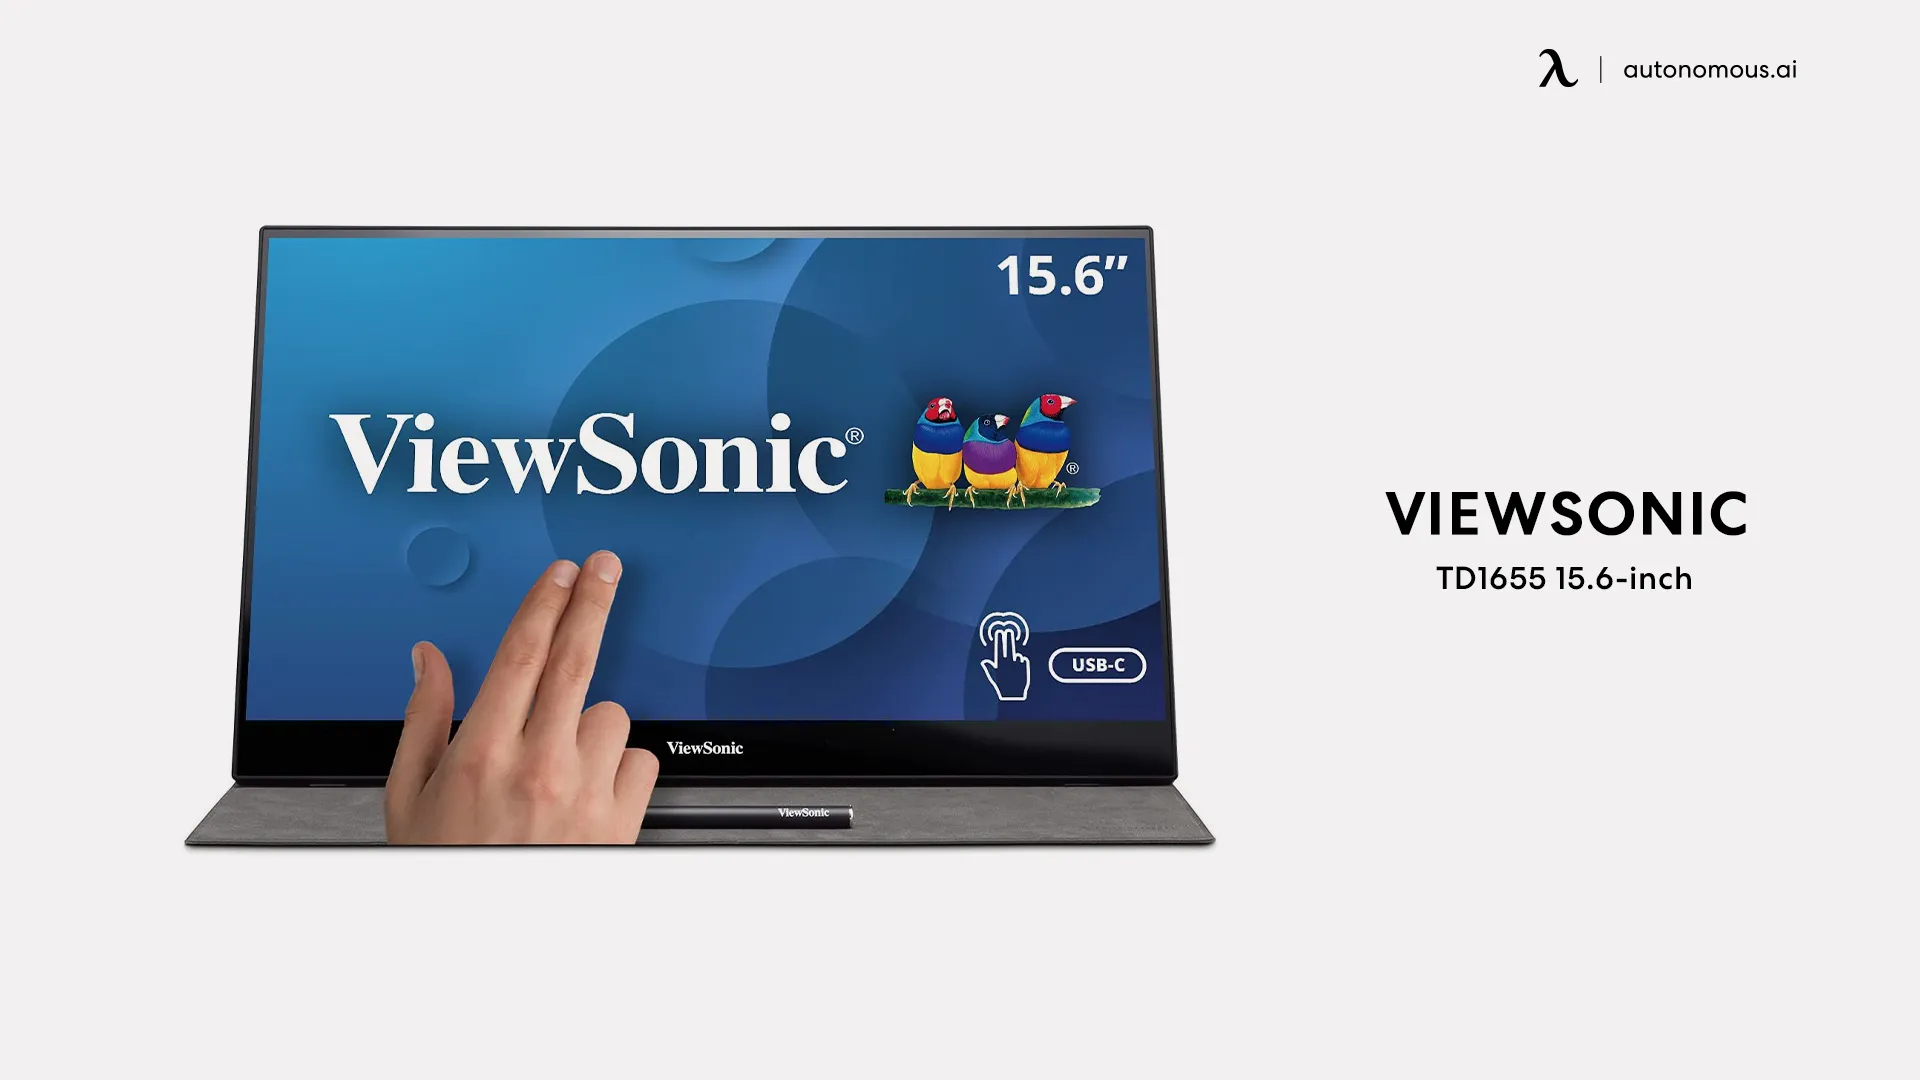 ViewSonic TD1655 15.6-inch